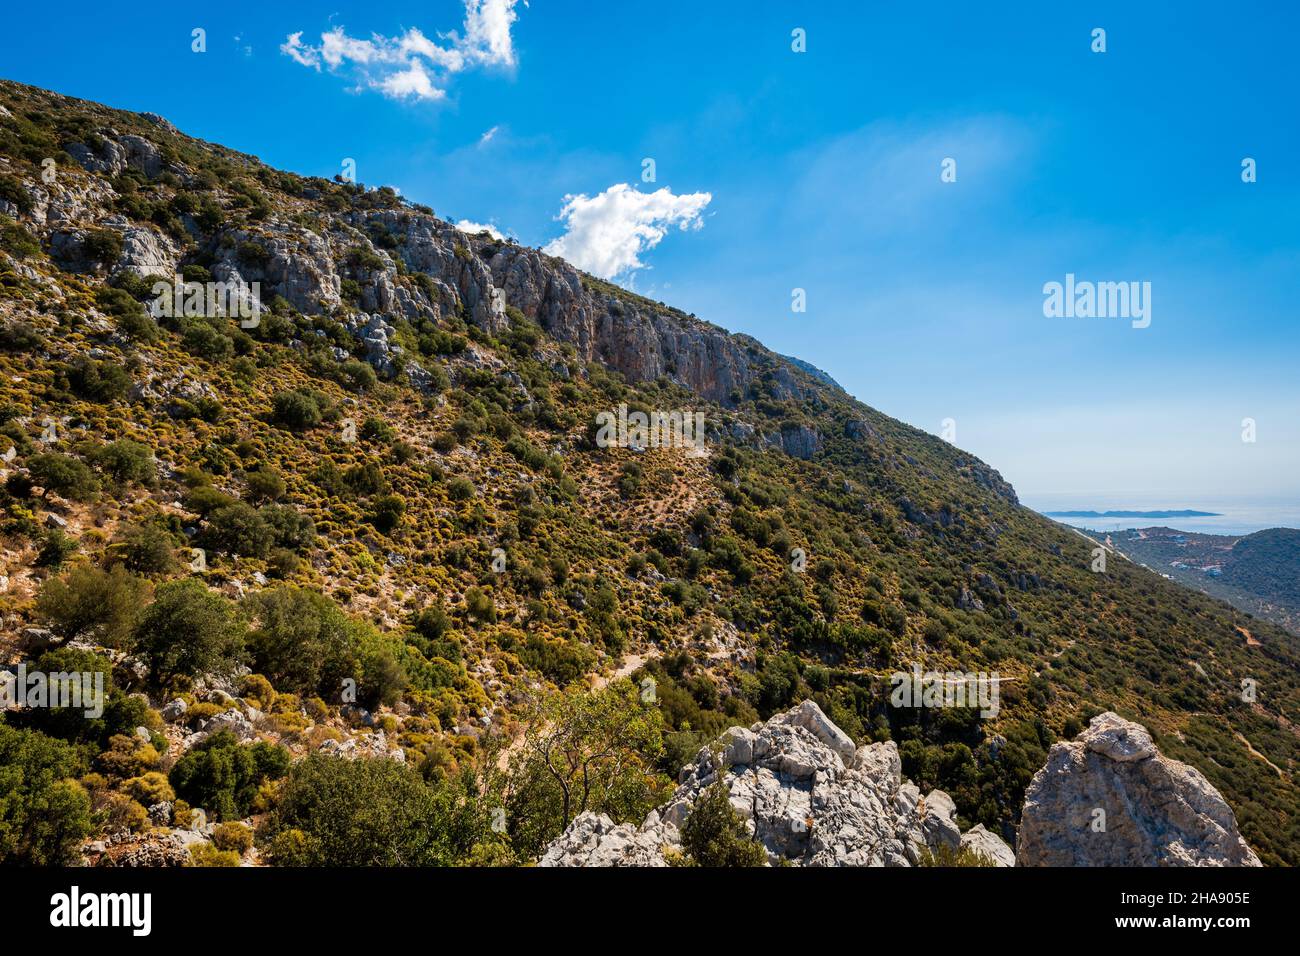 Percorso escursionistico e trekking lungo la Via Licia con vista sulle montagne nella zona mediterranea turca con rocce, montagne. Immagine del paesaggio di montagna Foto Stock